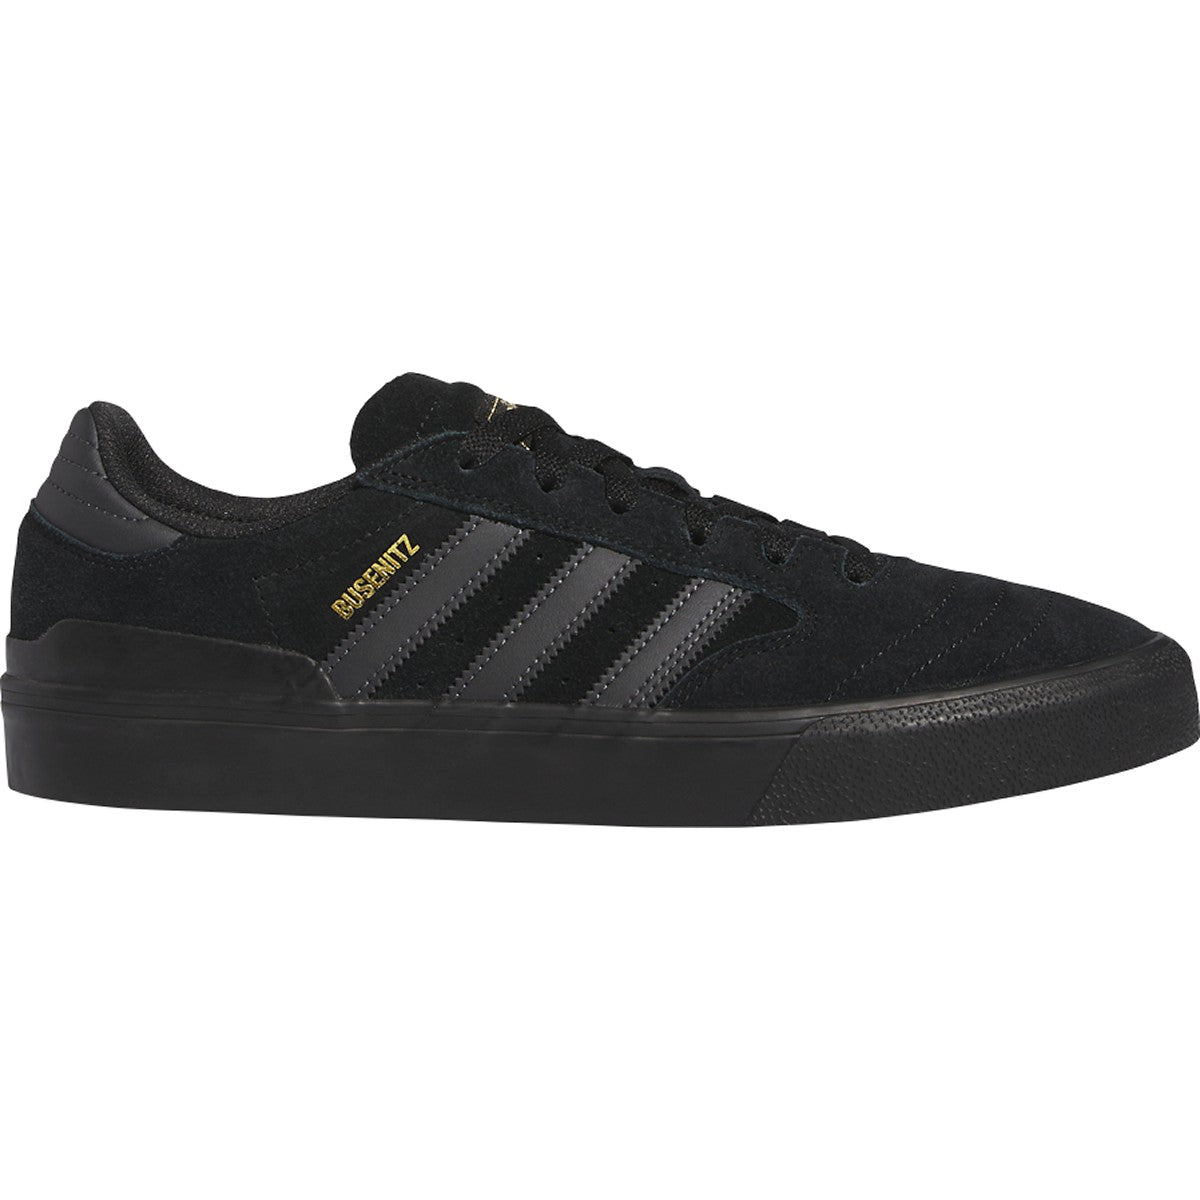 Black/Black Busenitz Vulc II Adidas Skate Shoe